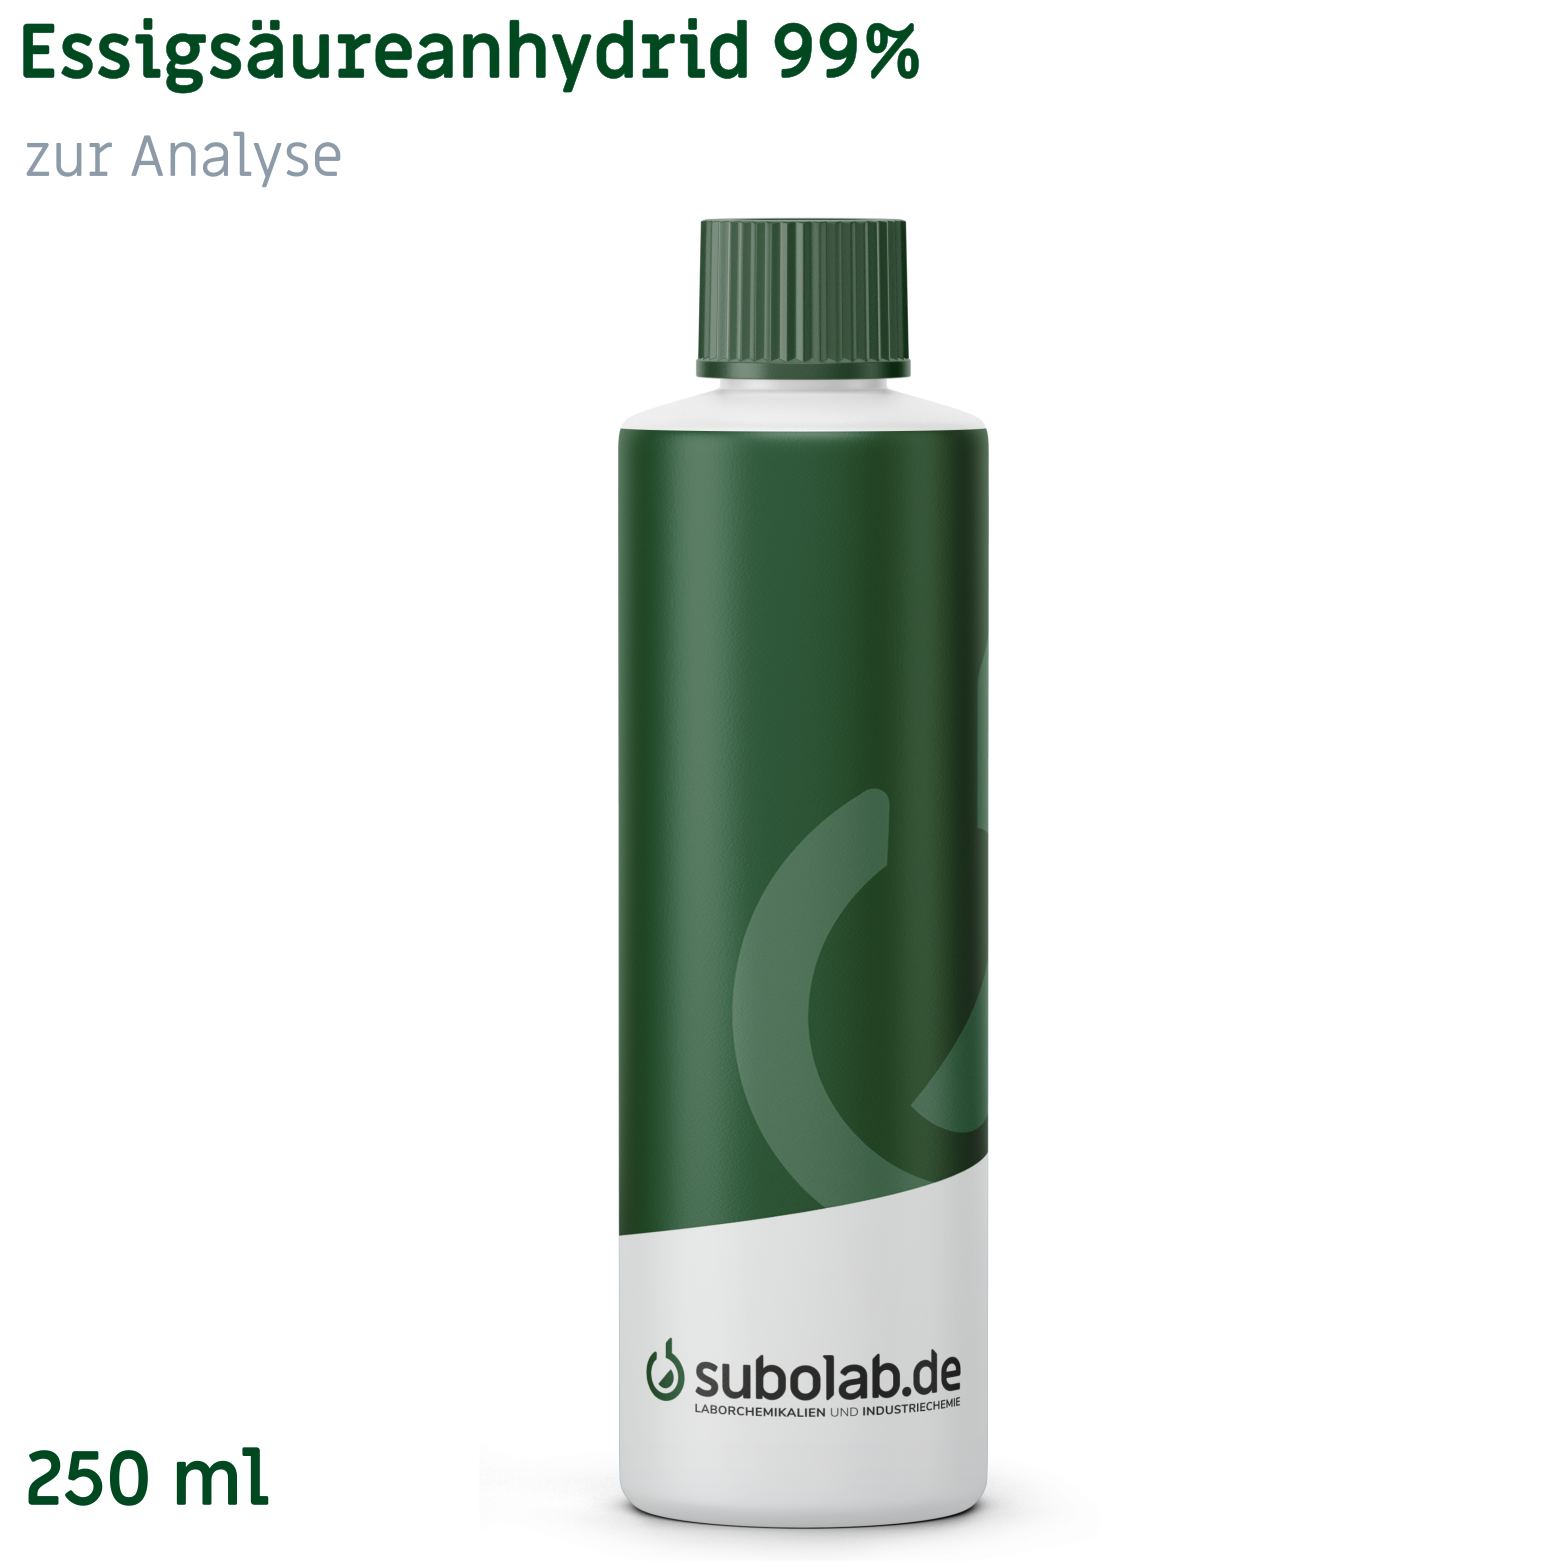 Bild von Essigsäureanhydrid 99% zur Analyse (250 ml)